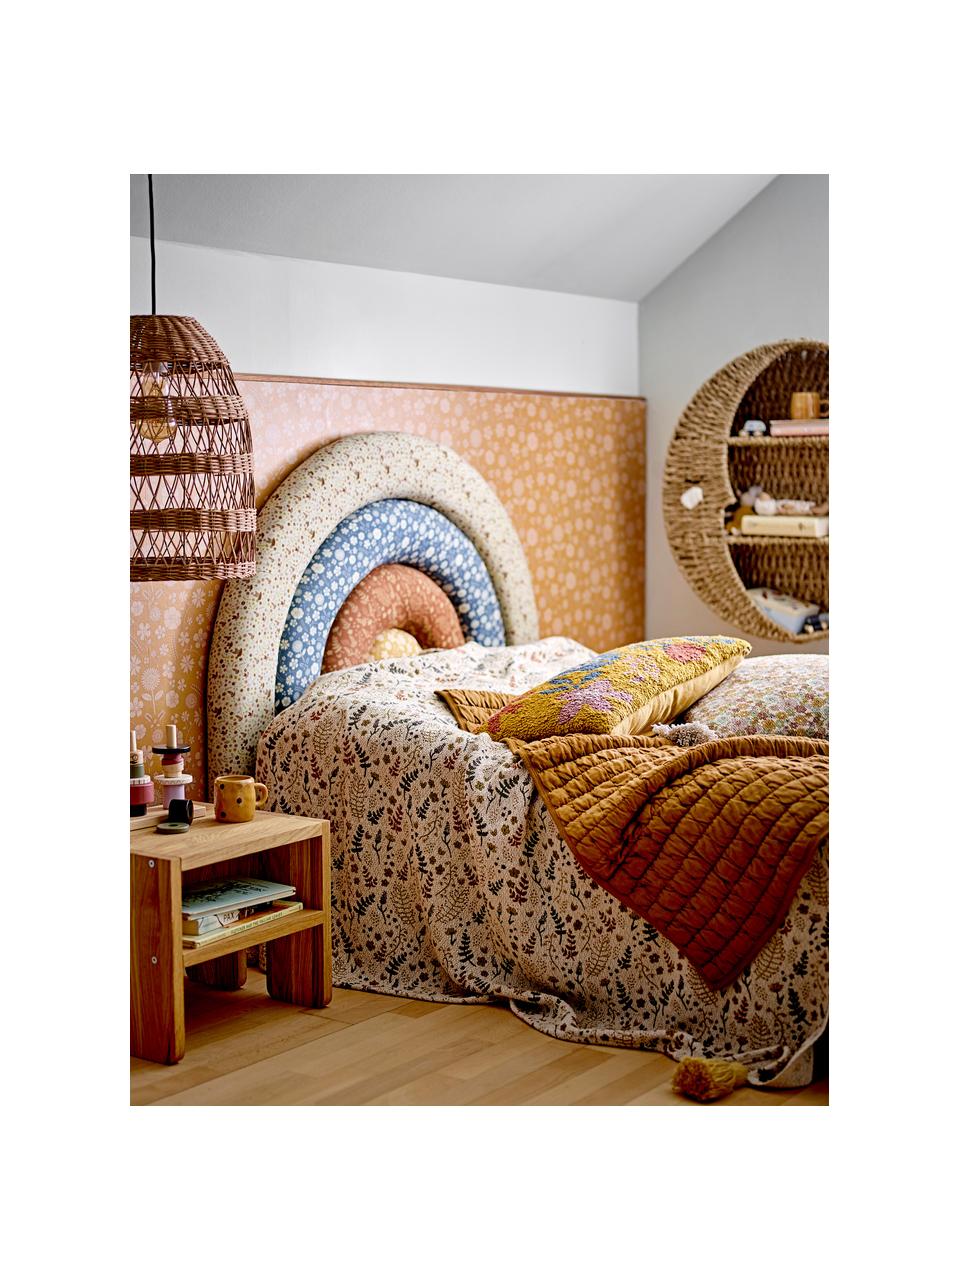 Tête de lit en forme d'arc-en-ciel et imprimé floral Jo, Jaune, brun, bleu, blanc crème, larg. 100 x haut. 90 cm